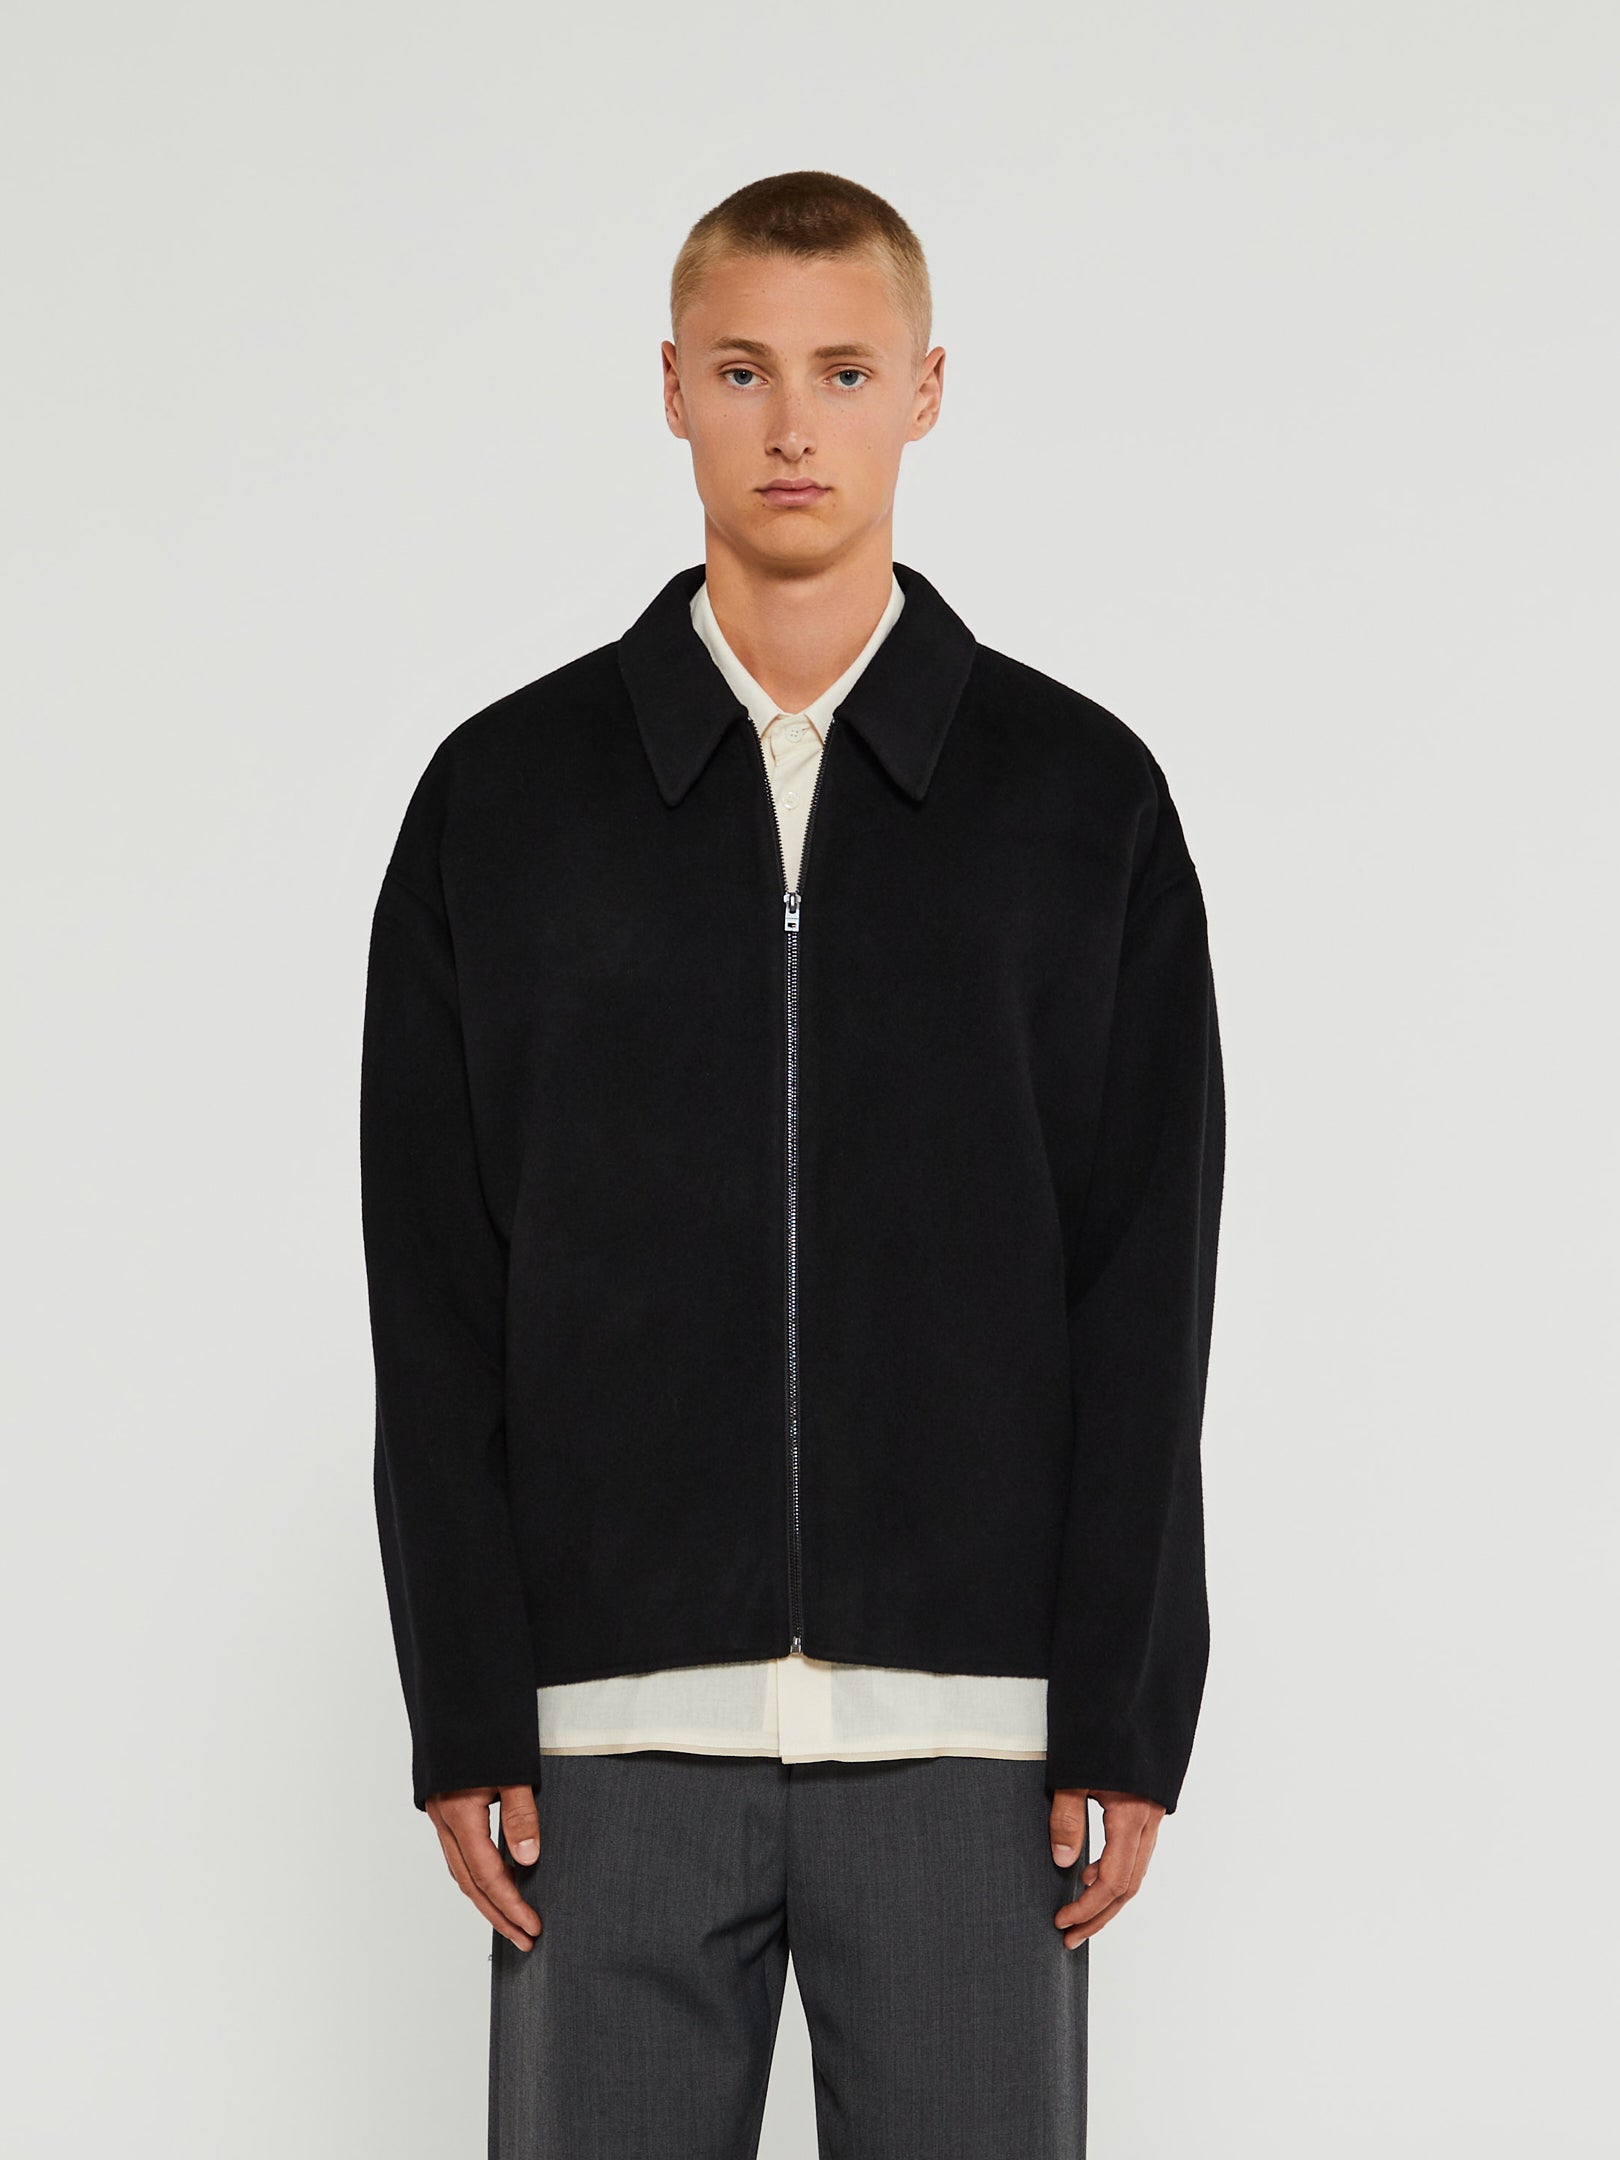 Acne - Wool Zipper Jacket in Black